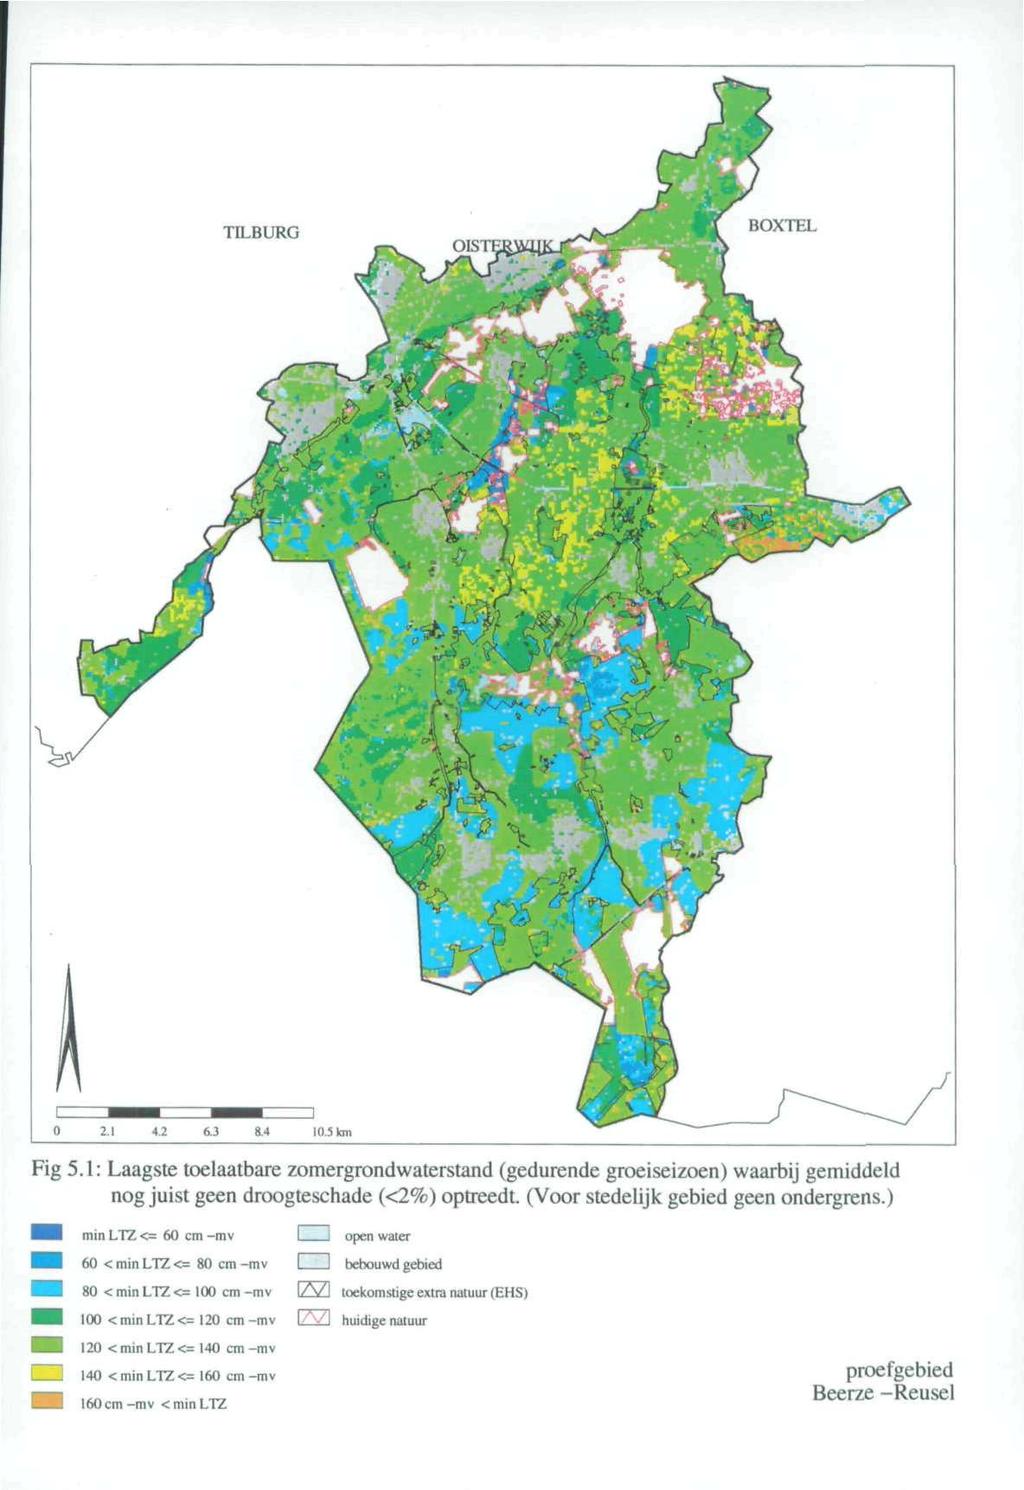 TILBURG HOYII.l 4.2 6.3 8.4 10.5 km Fig 5.1: Laagste toelaatbare zomergrondwaterstand (gedurende groeiseizoen) waarbij gemiddeld nog juist geen droogteschade (<2%) optreedt.